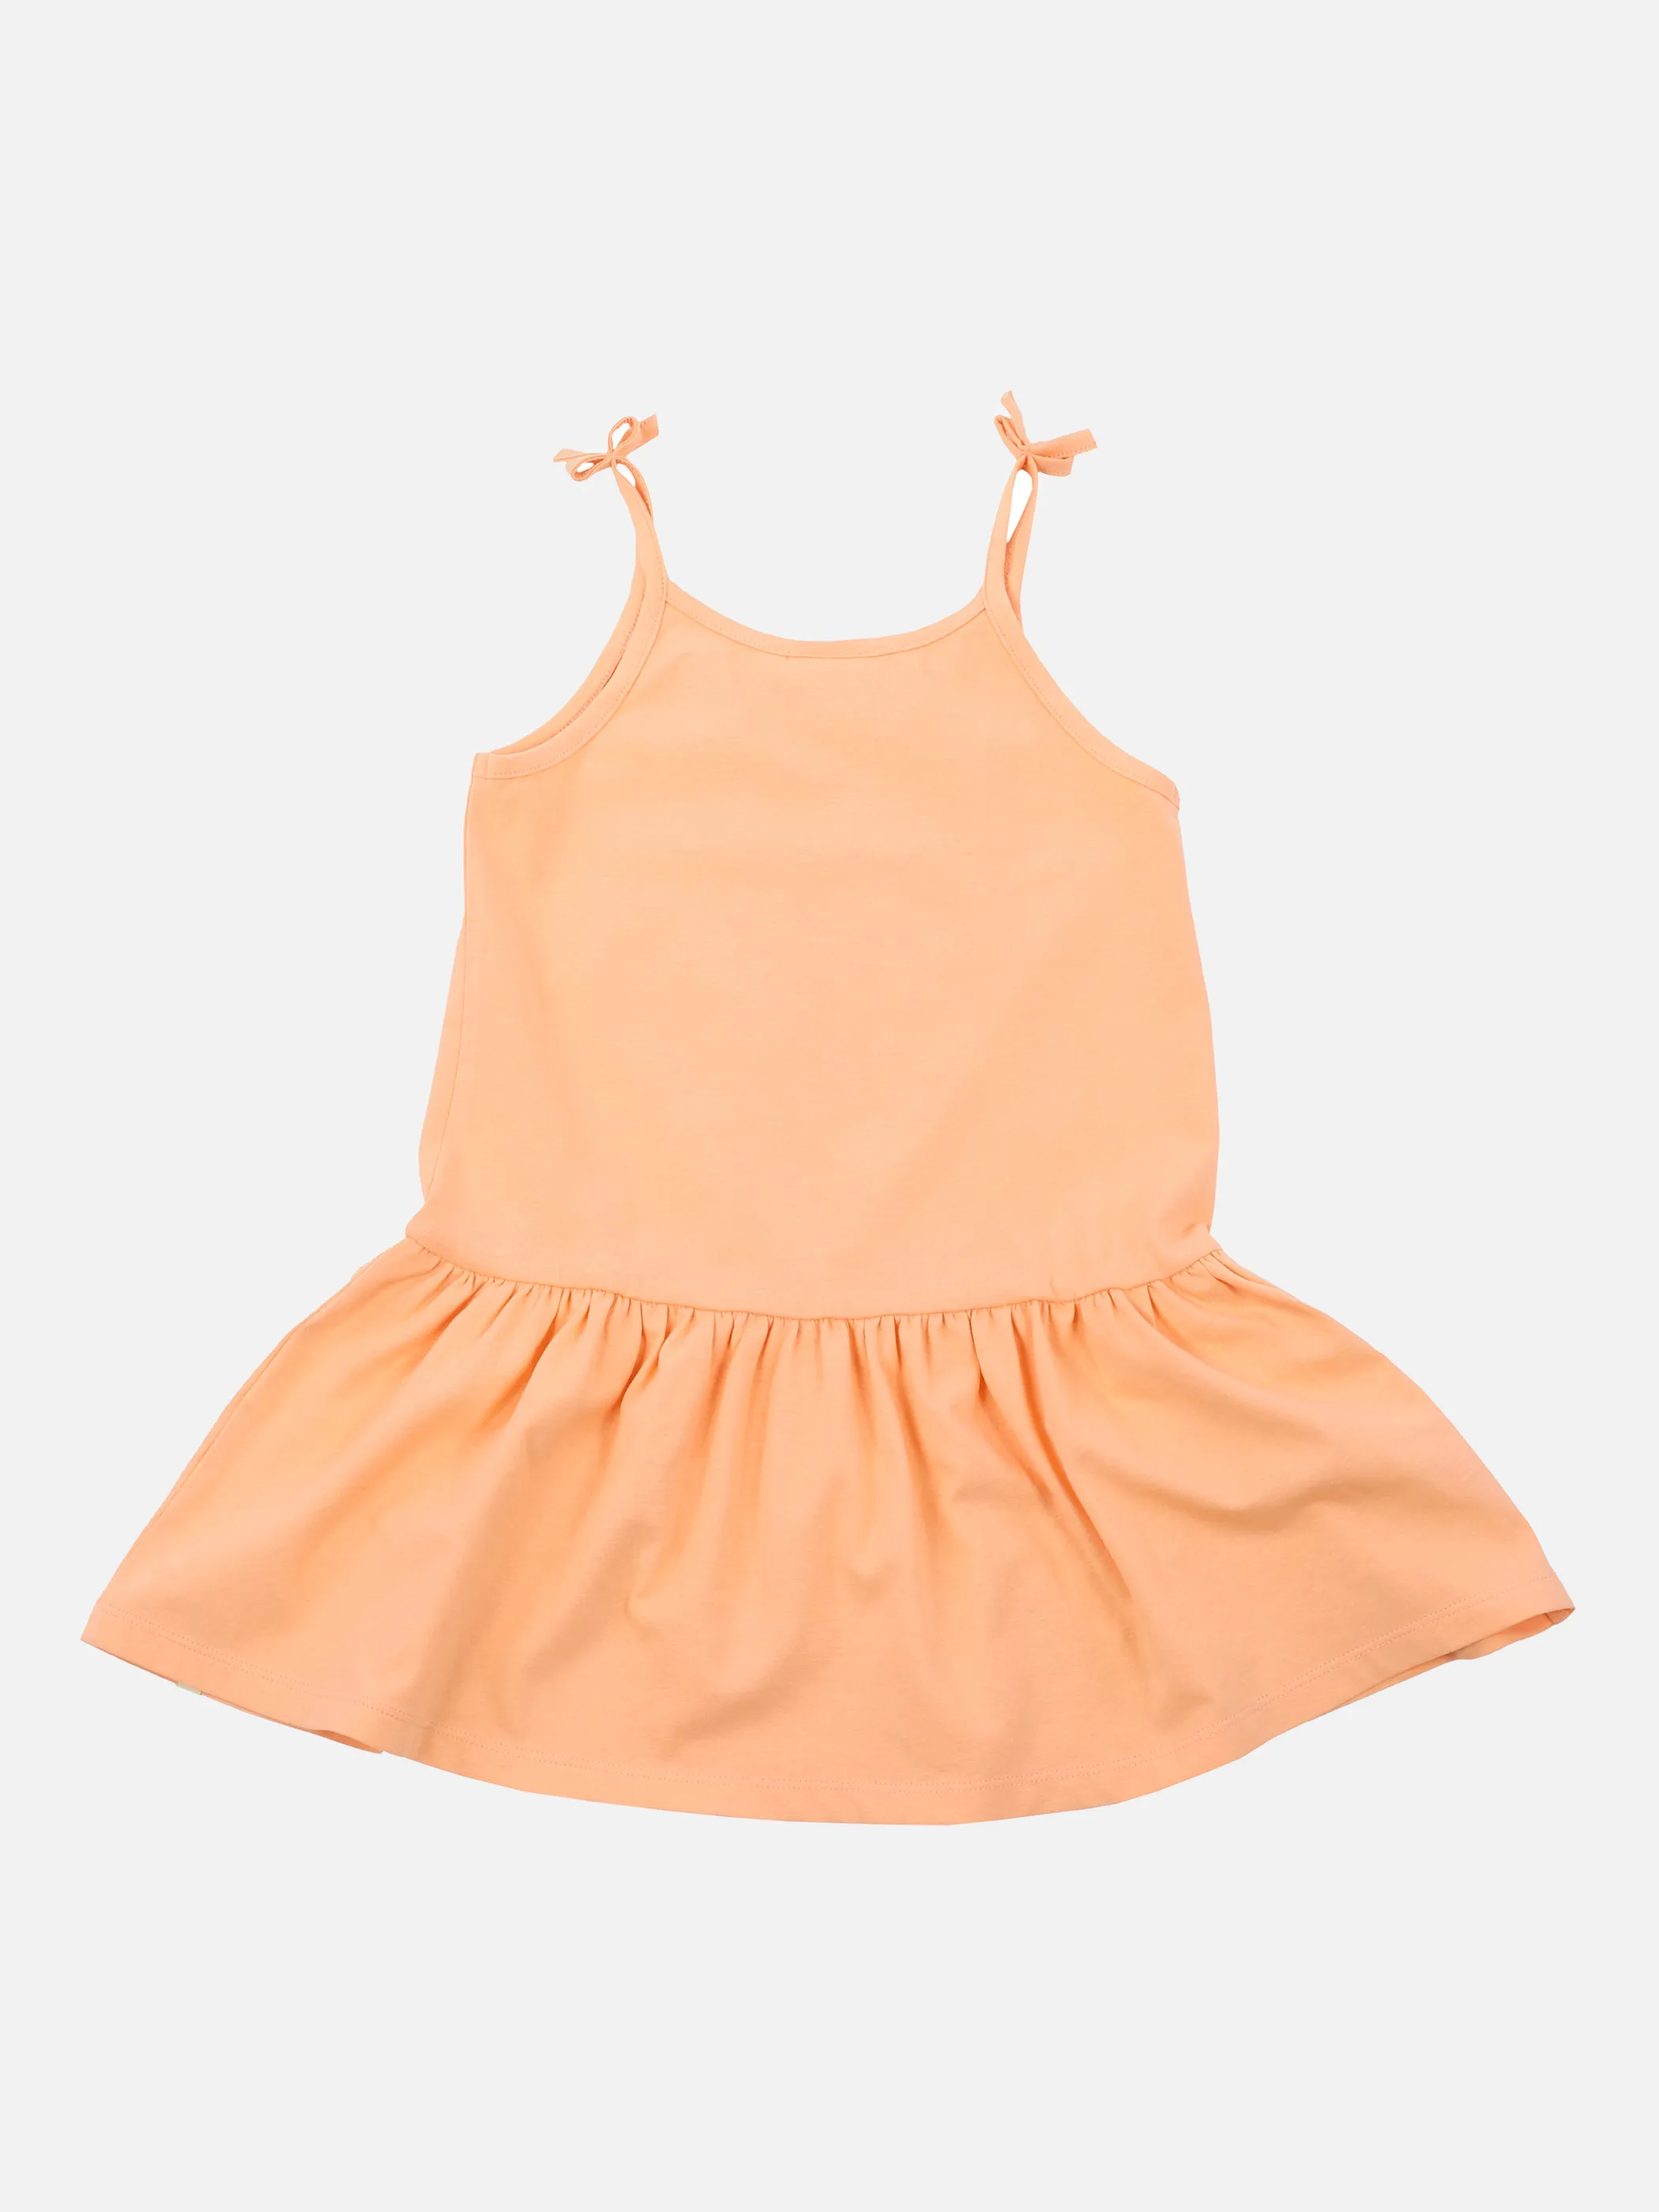 Stop + Go MG Kleid in orange mit Sonne + Orange 862986 ORANGE 2